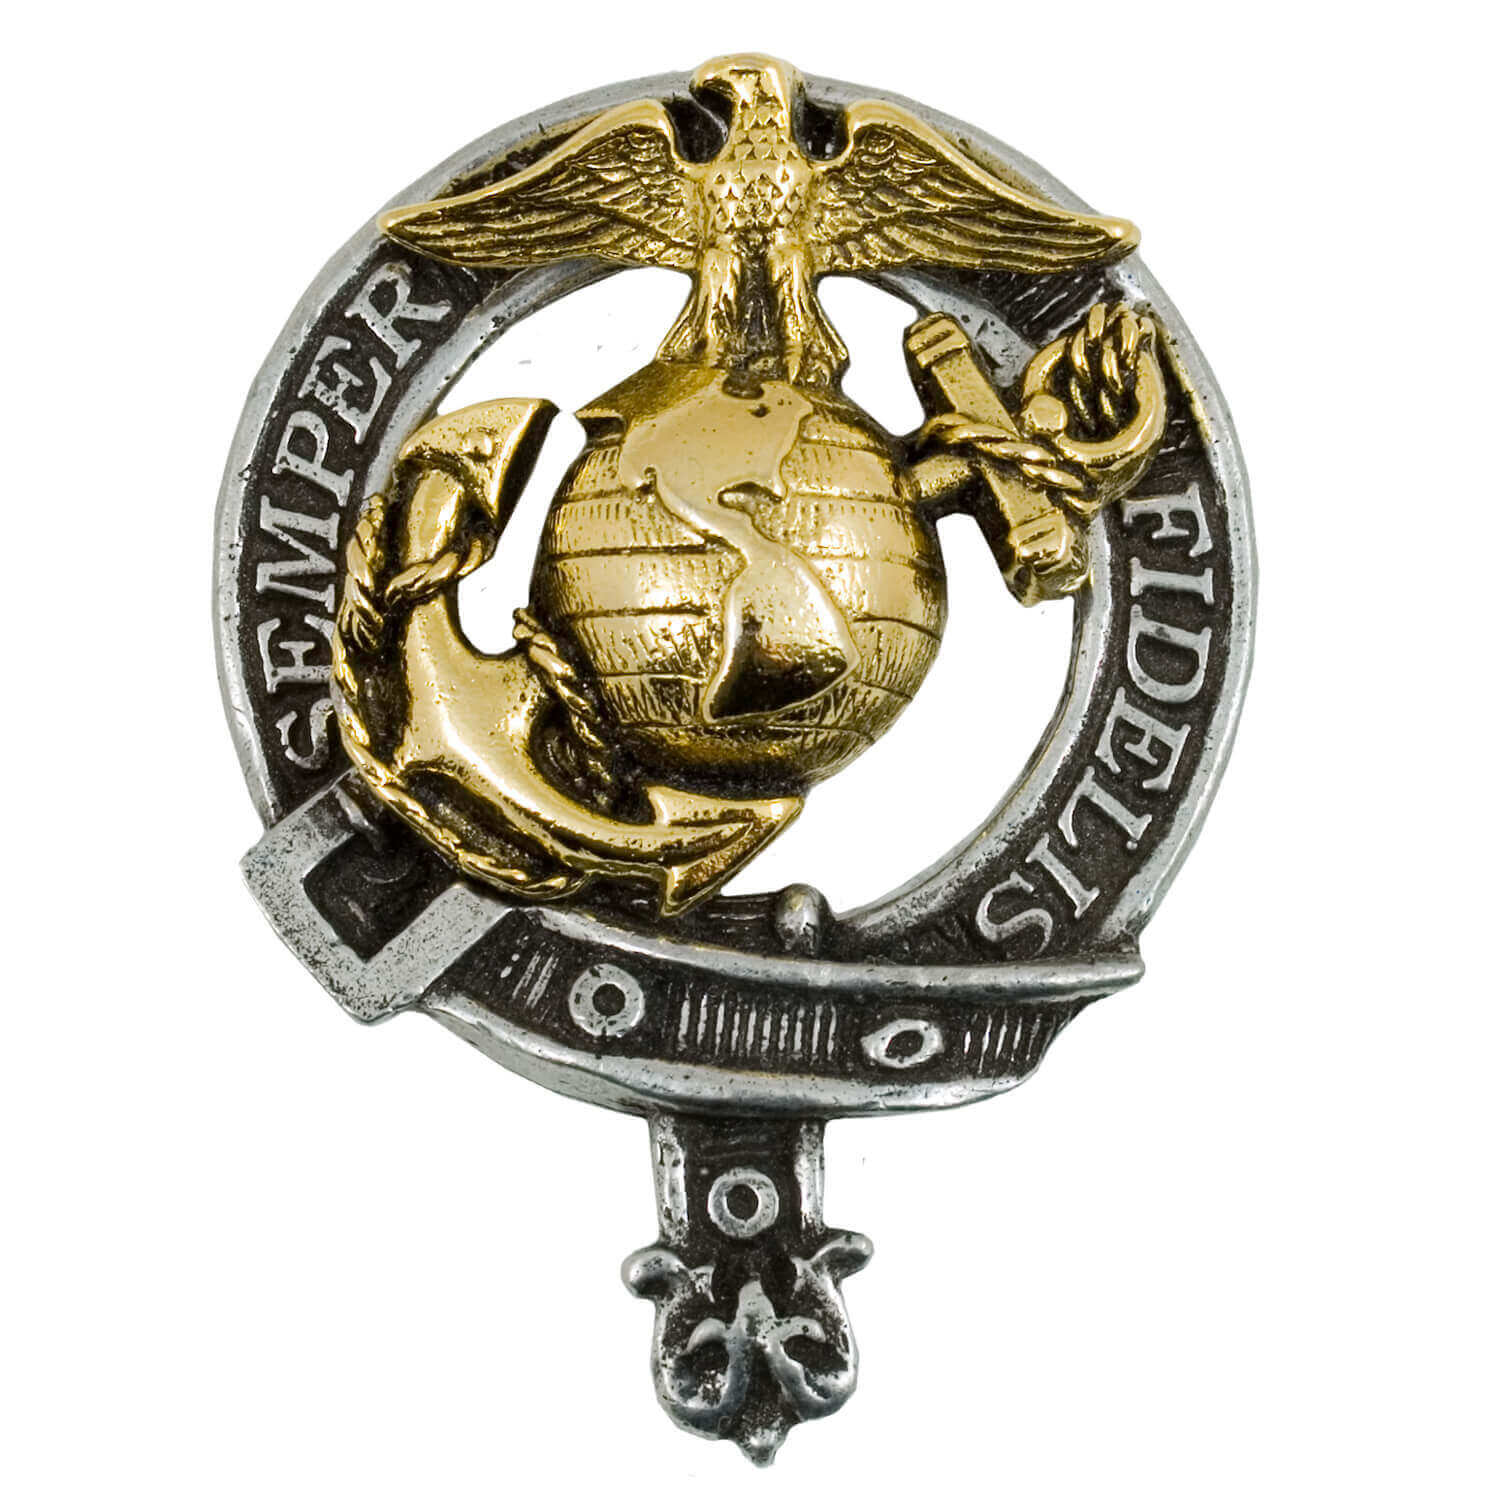 Usmc Adler Emblem Marine Corps Militär Polizei Anstecker Hut Pin Tie Tragen Es 